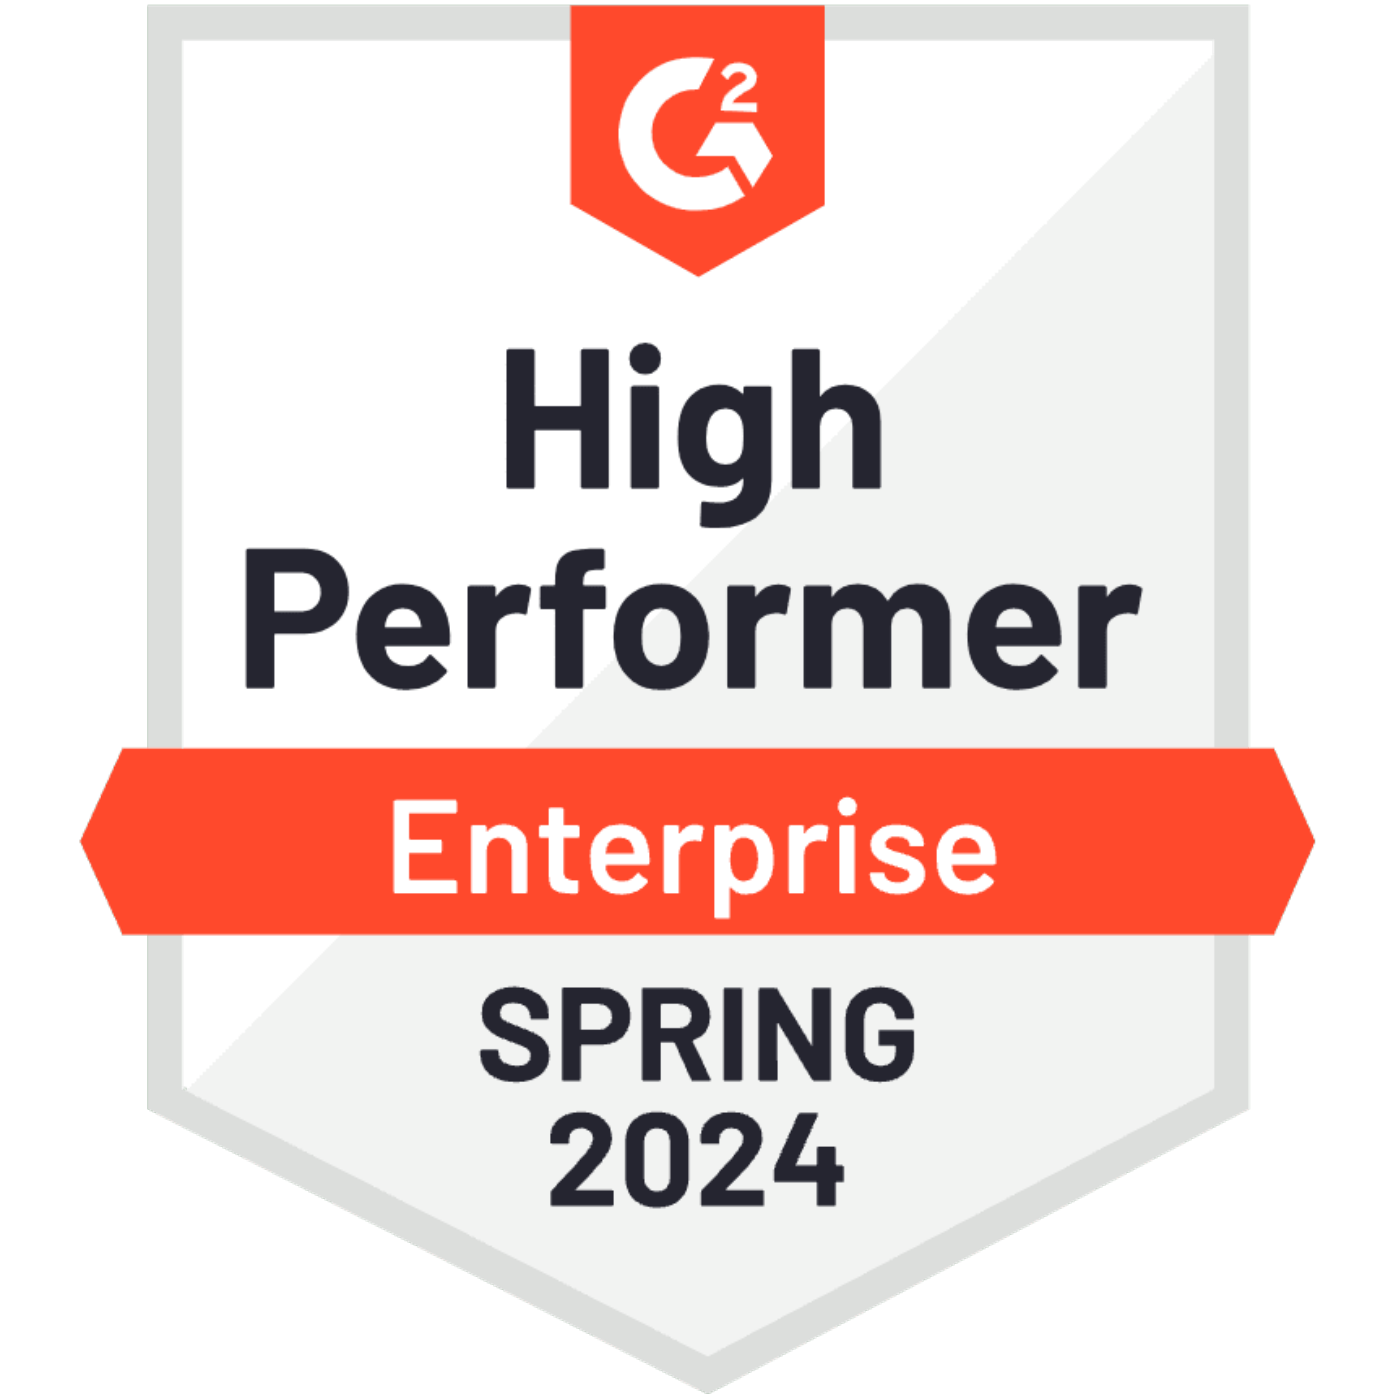 G2_High_Performer_Enterprise_Spring_2024_600_600